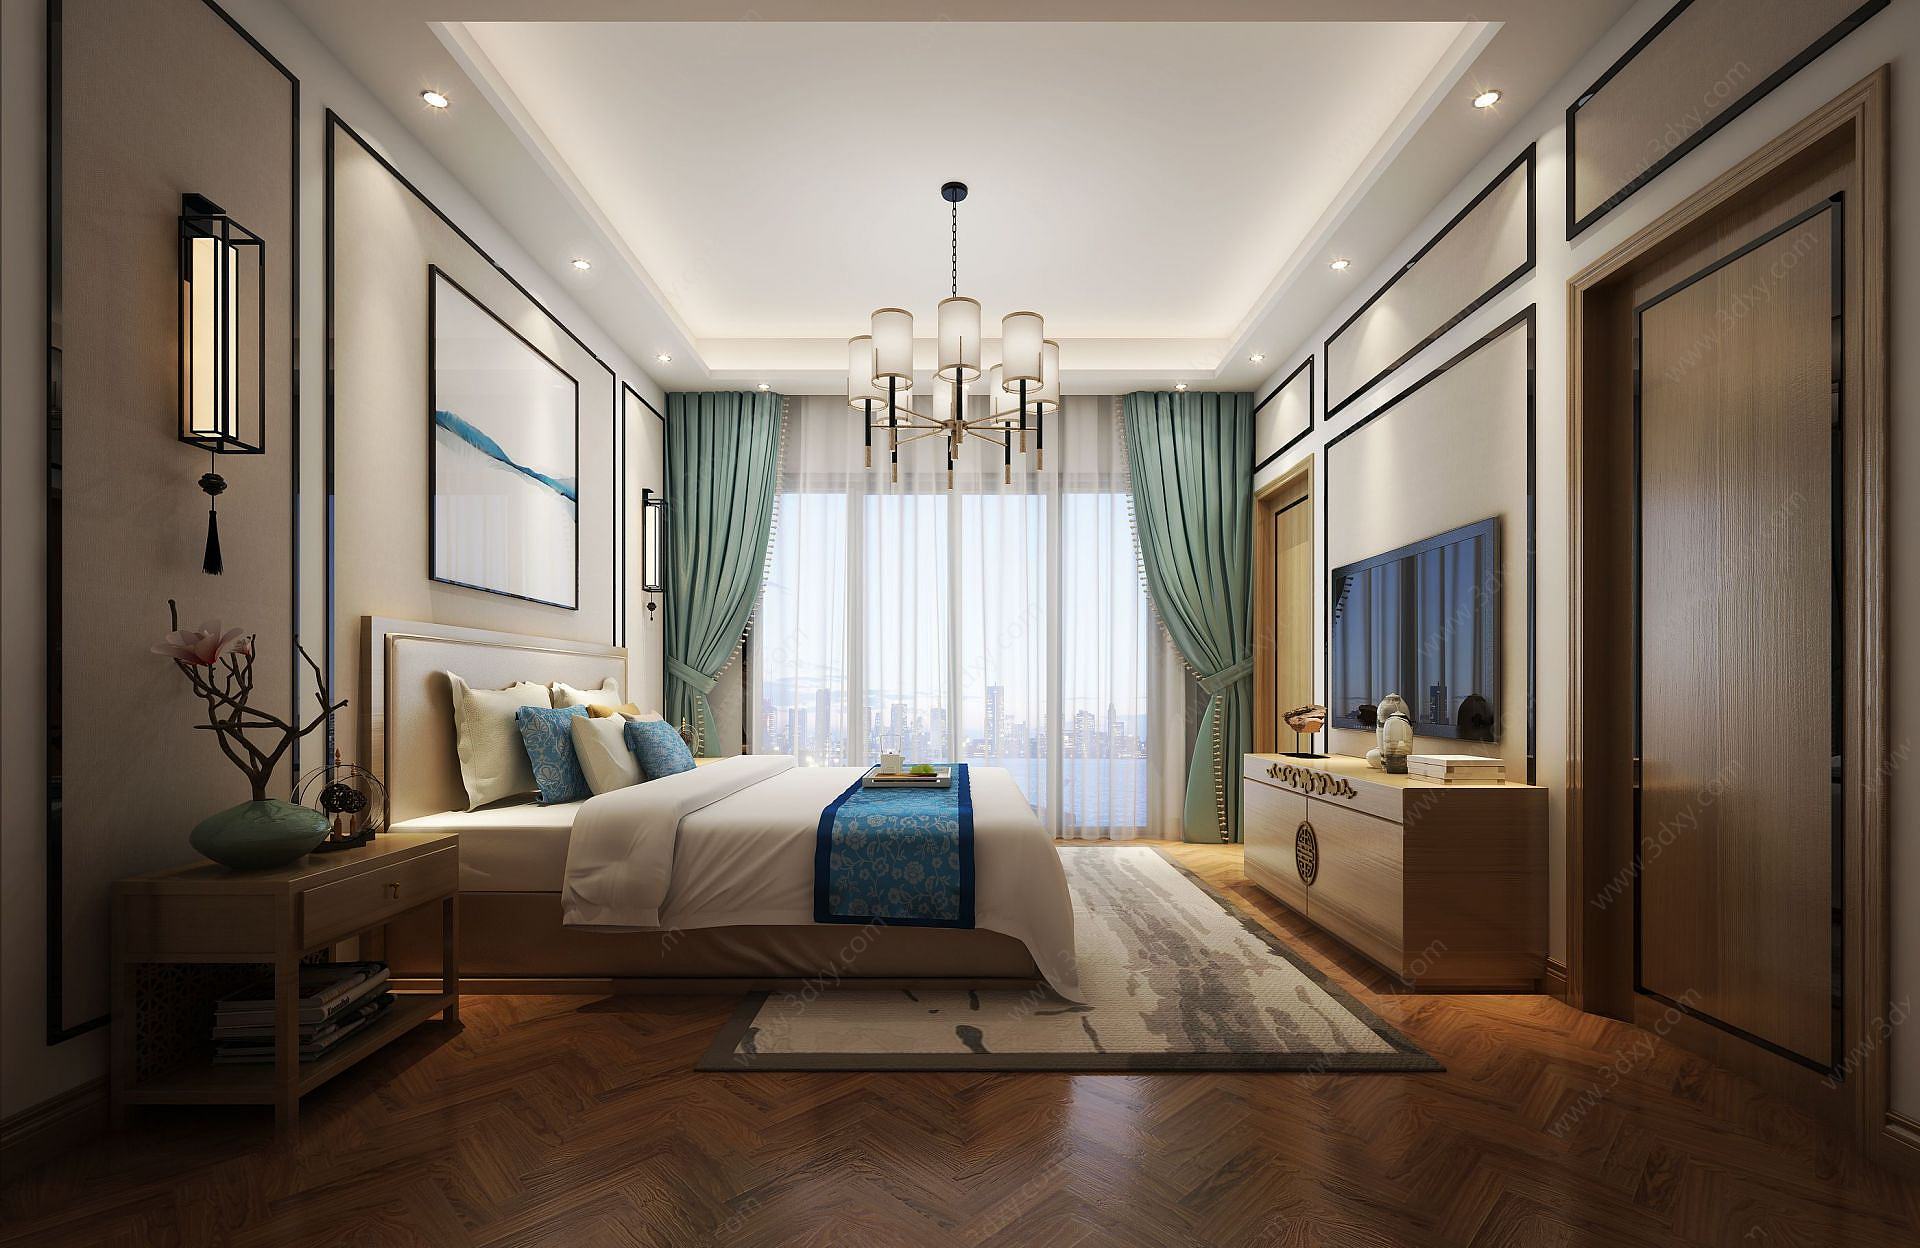 现代式蓝绿色调主题卧室3D模型